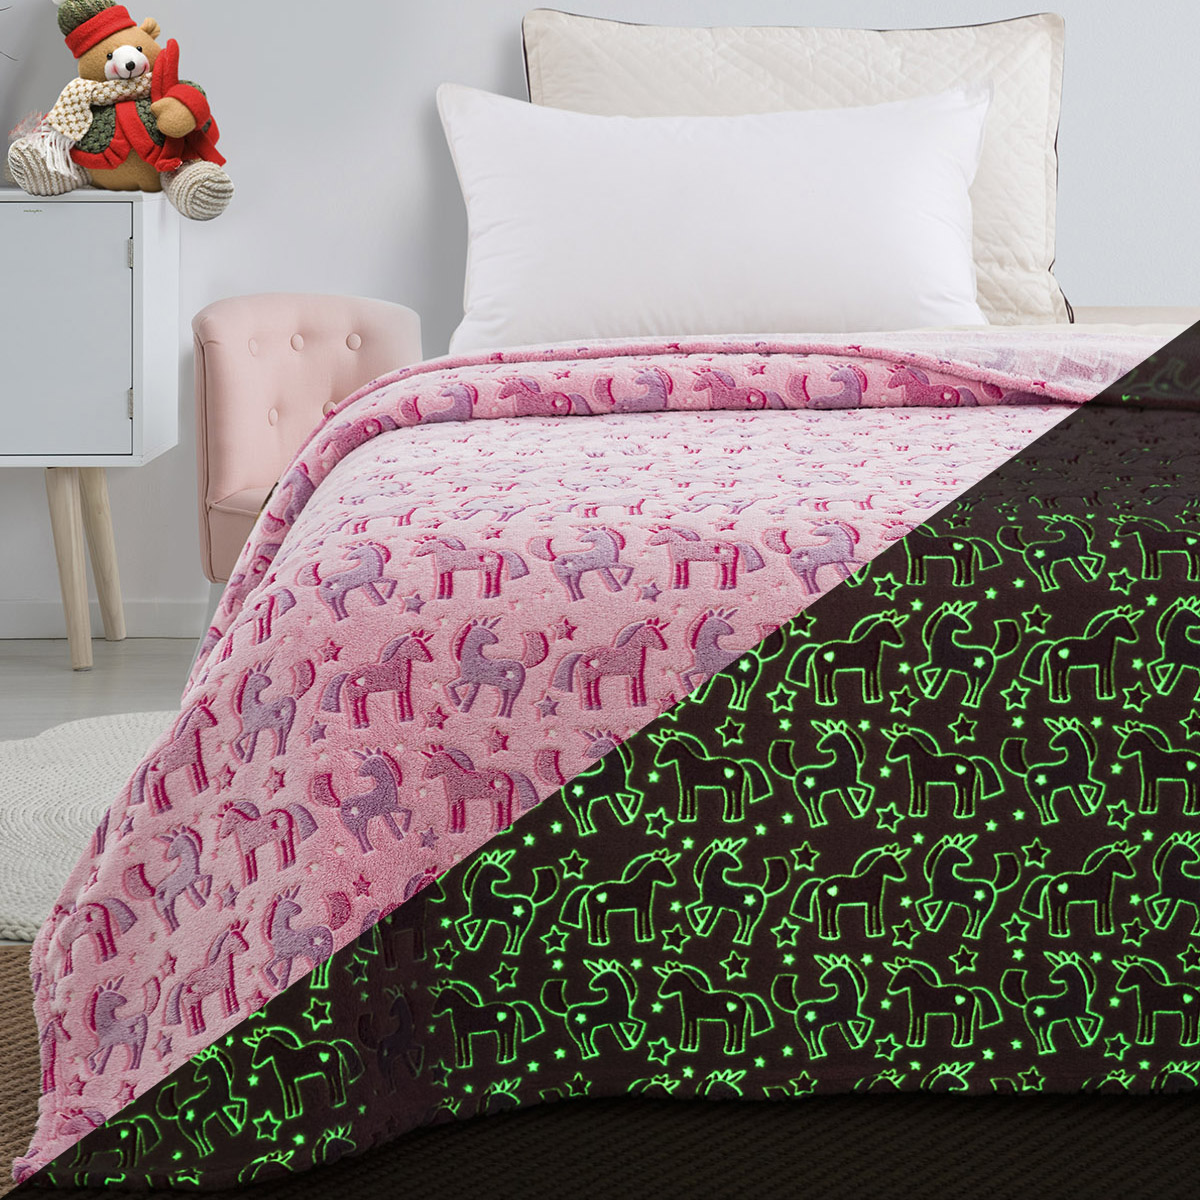 Κουβέρτα μονή φωσφορίζουσα Art 6148 160x220 Ροζ  